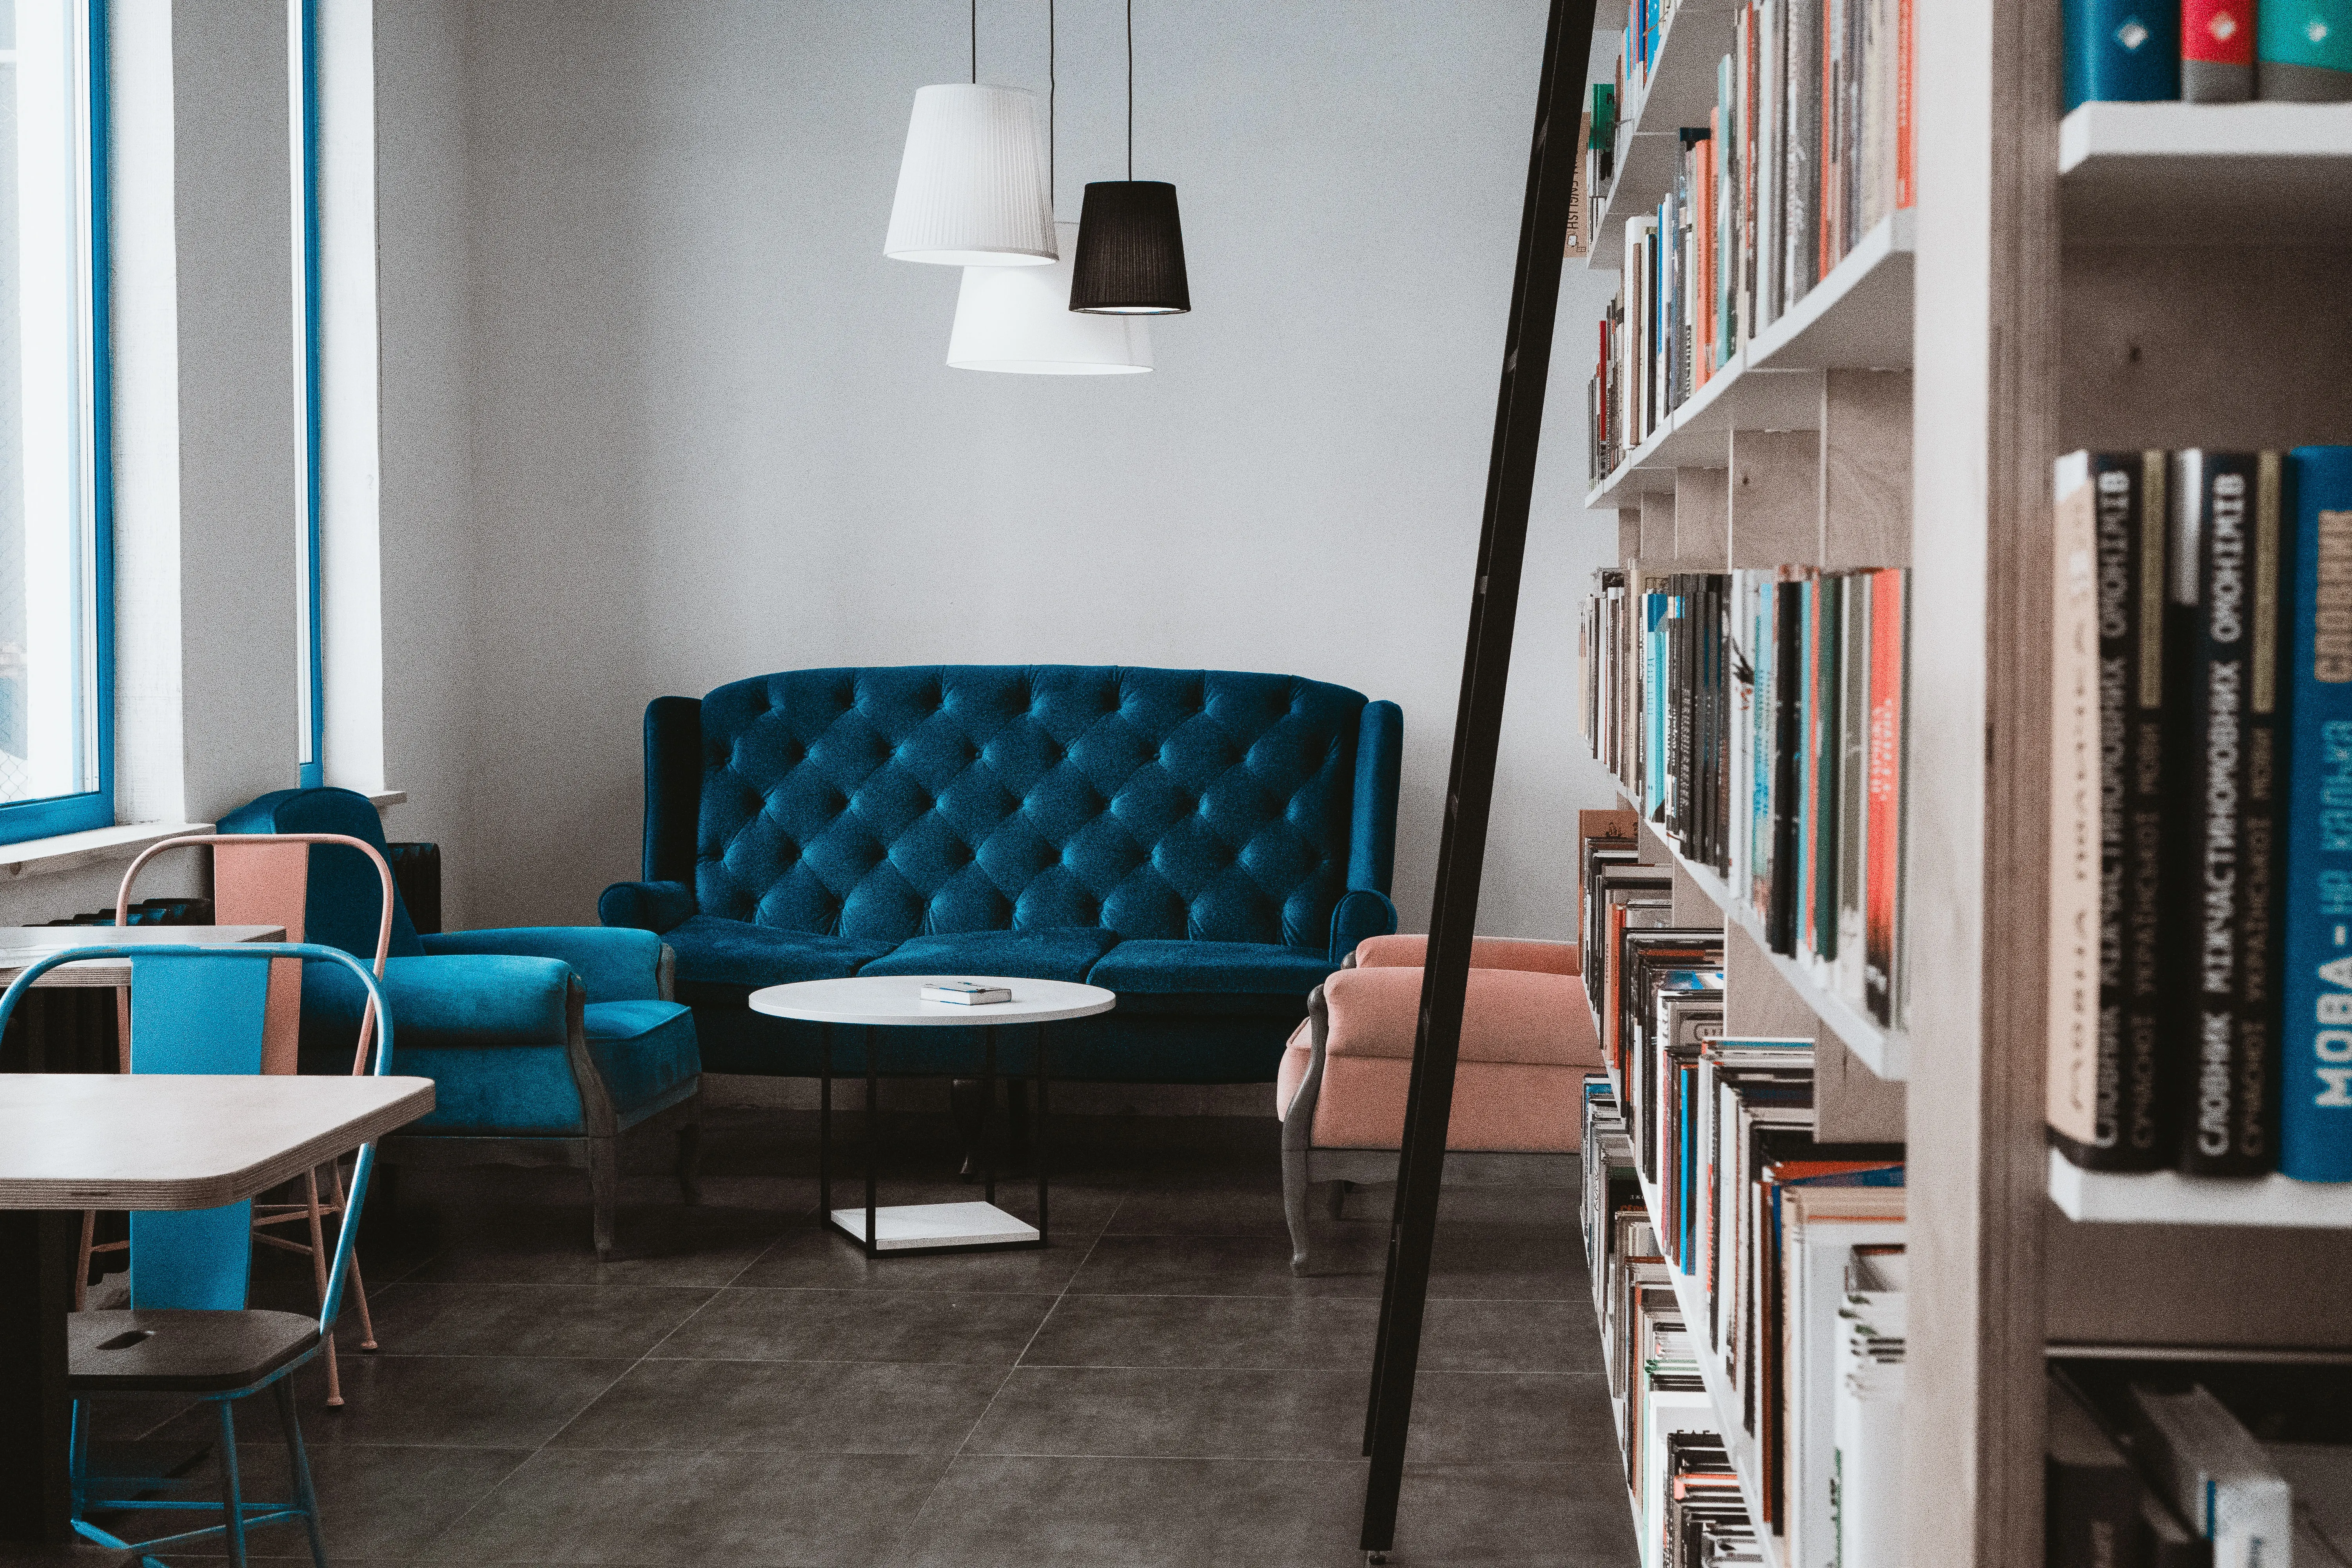  Statement Pieces: Incorporating Bold and Unique Furniture into Interior design to Make a Statement| interior design in dubai